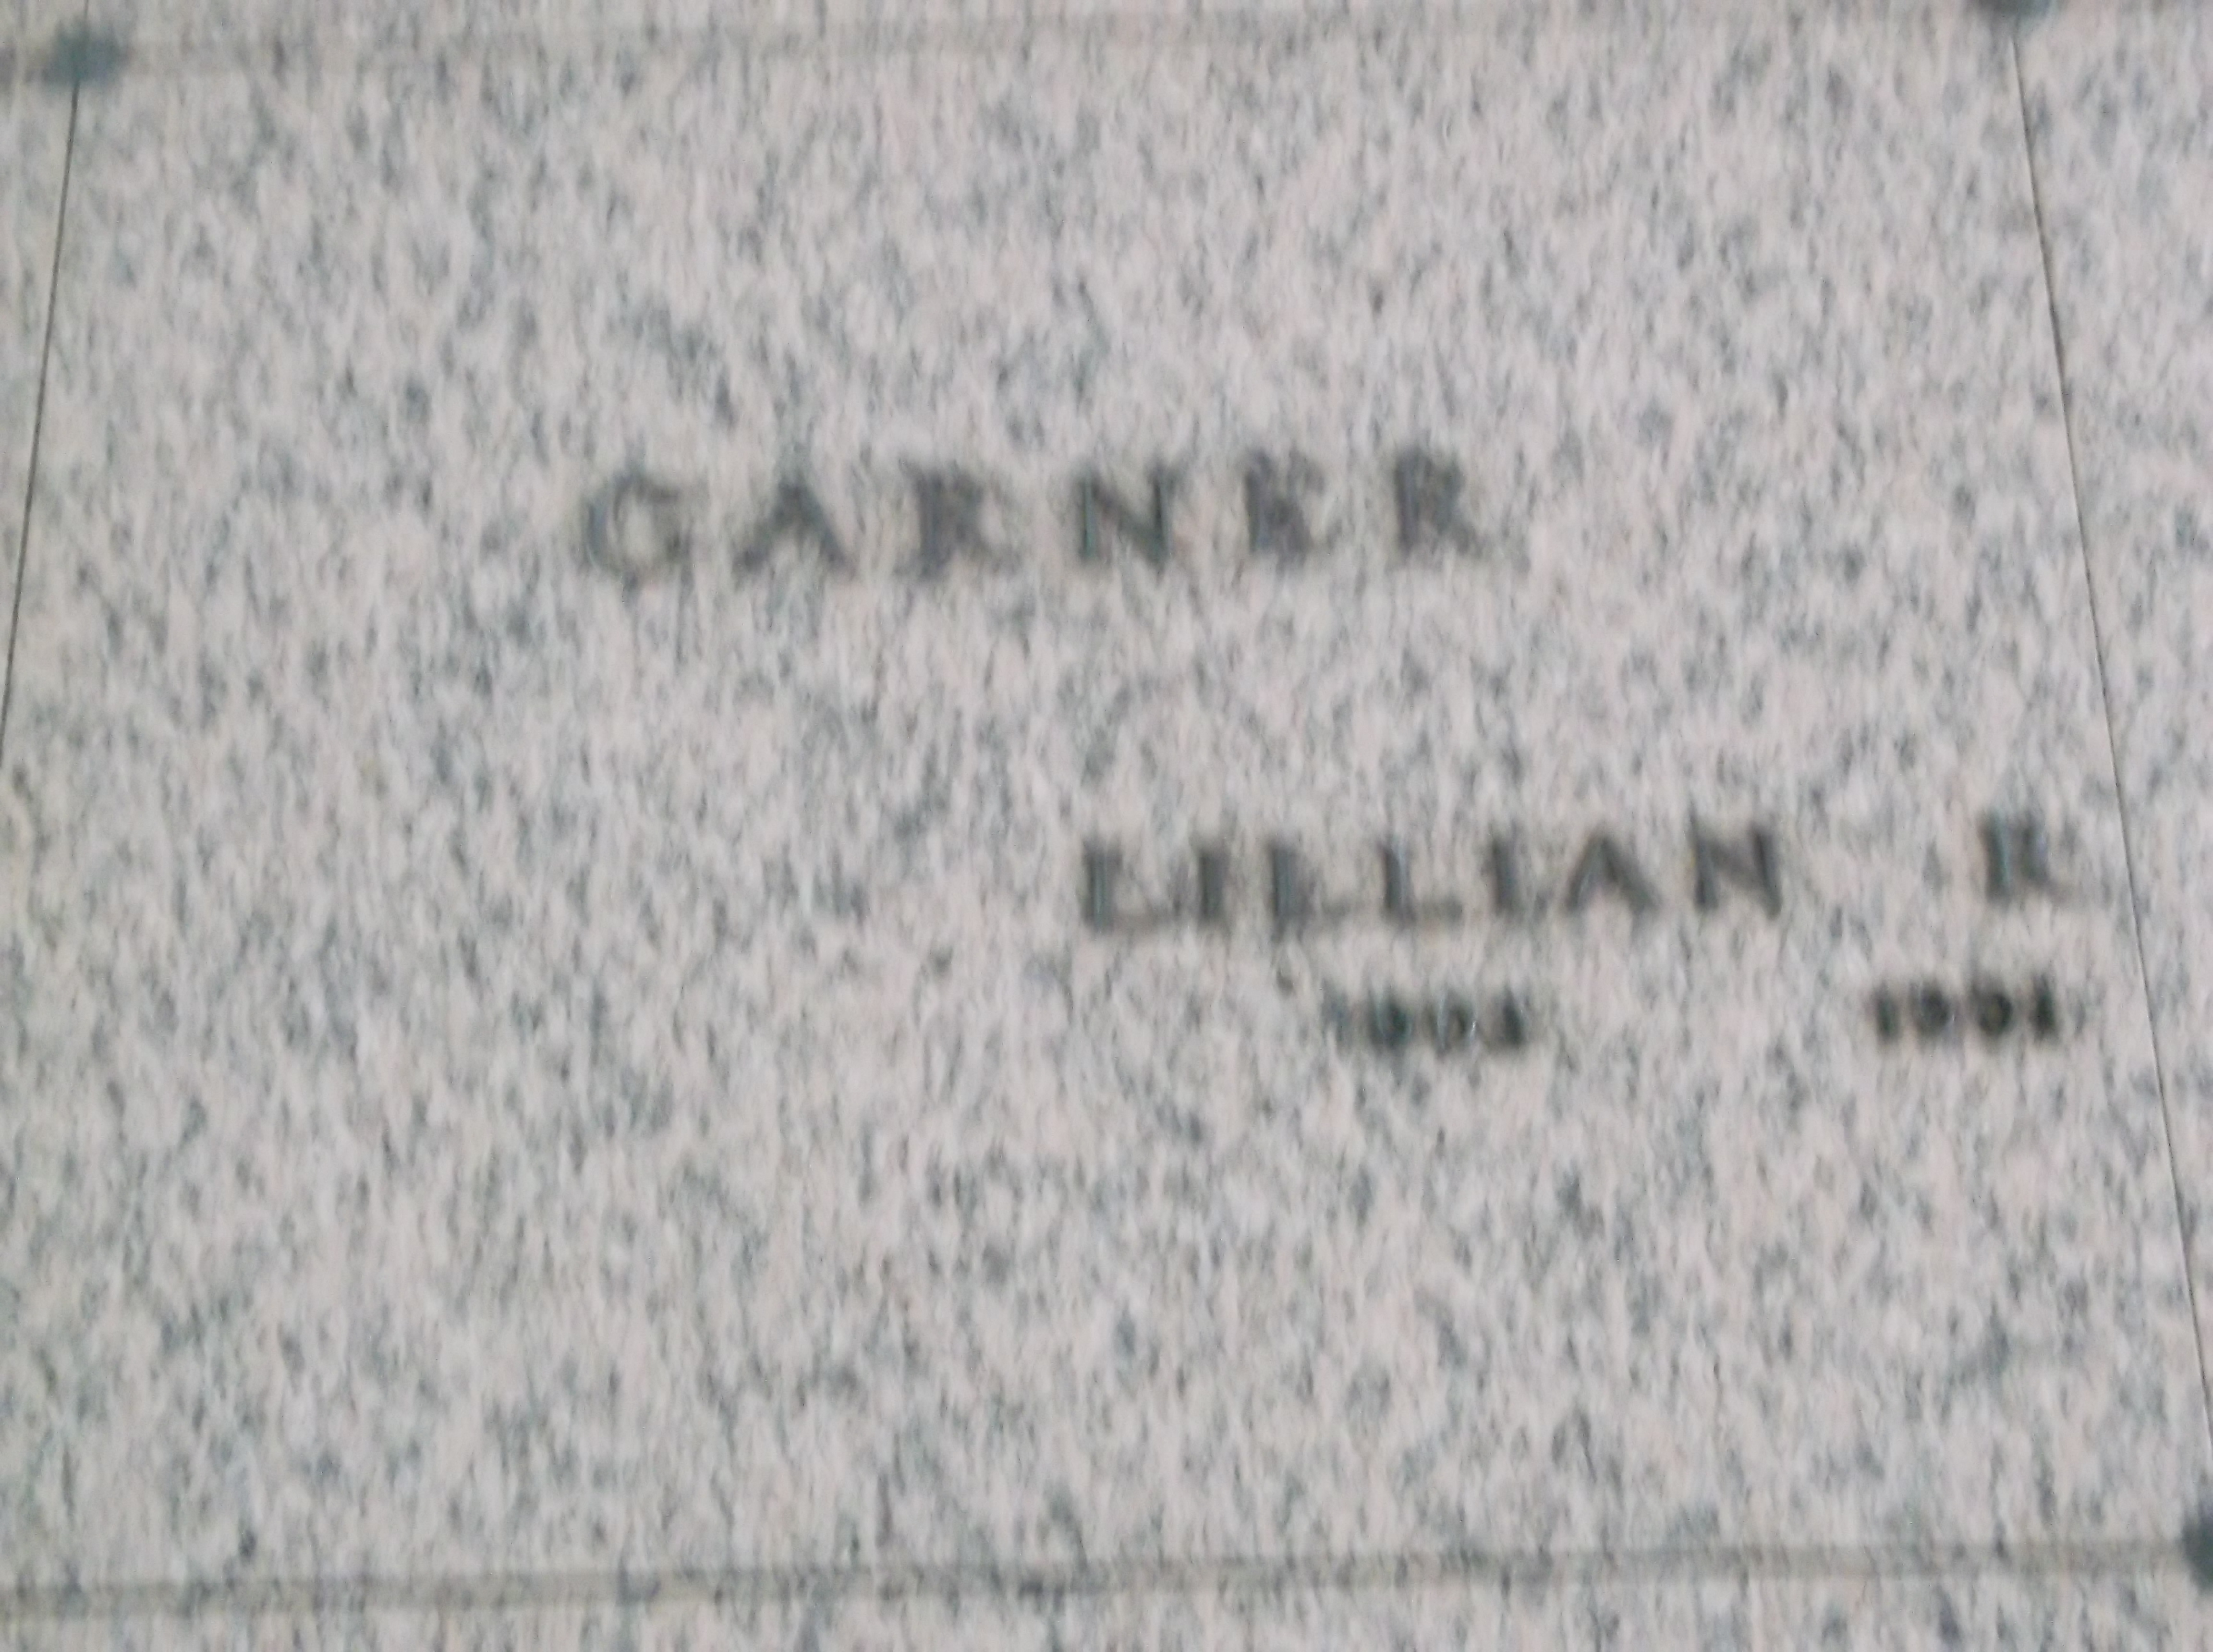 Lillian R Garner